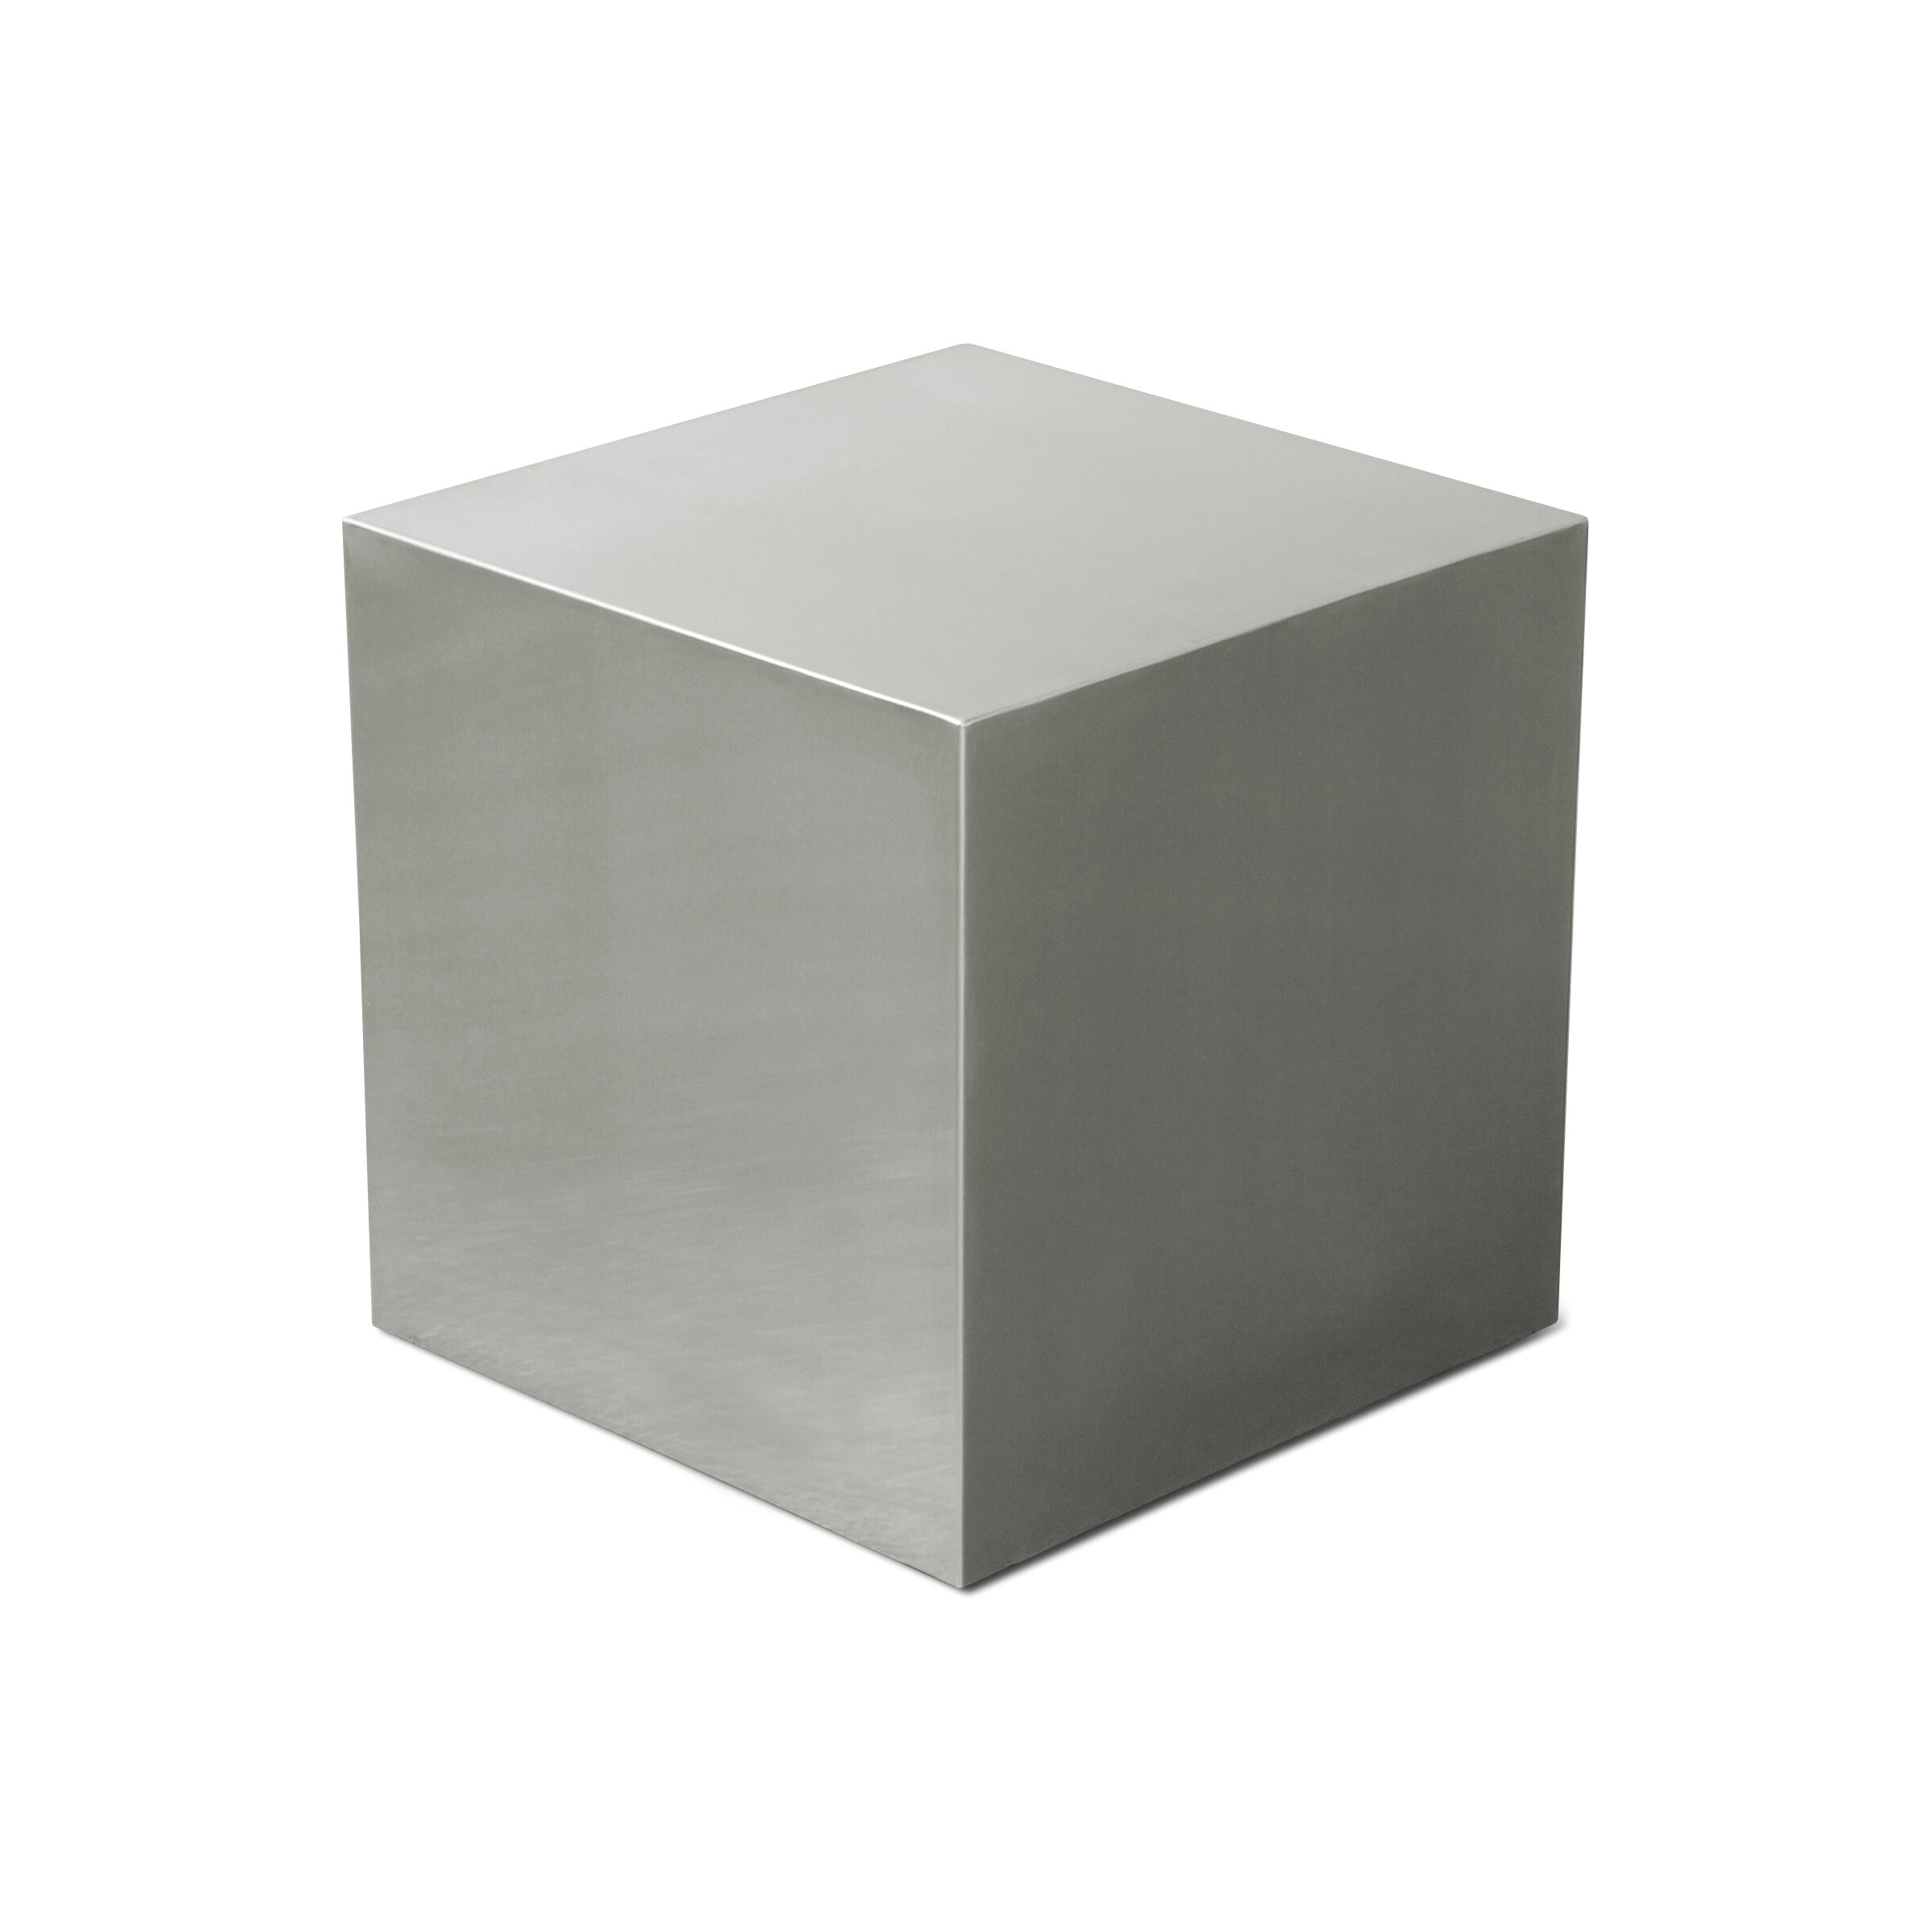 Reg kz. Куб. Белый куб. Объемная фигура куб. Серый куб.